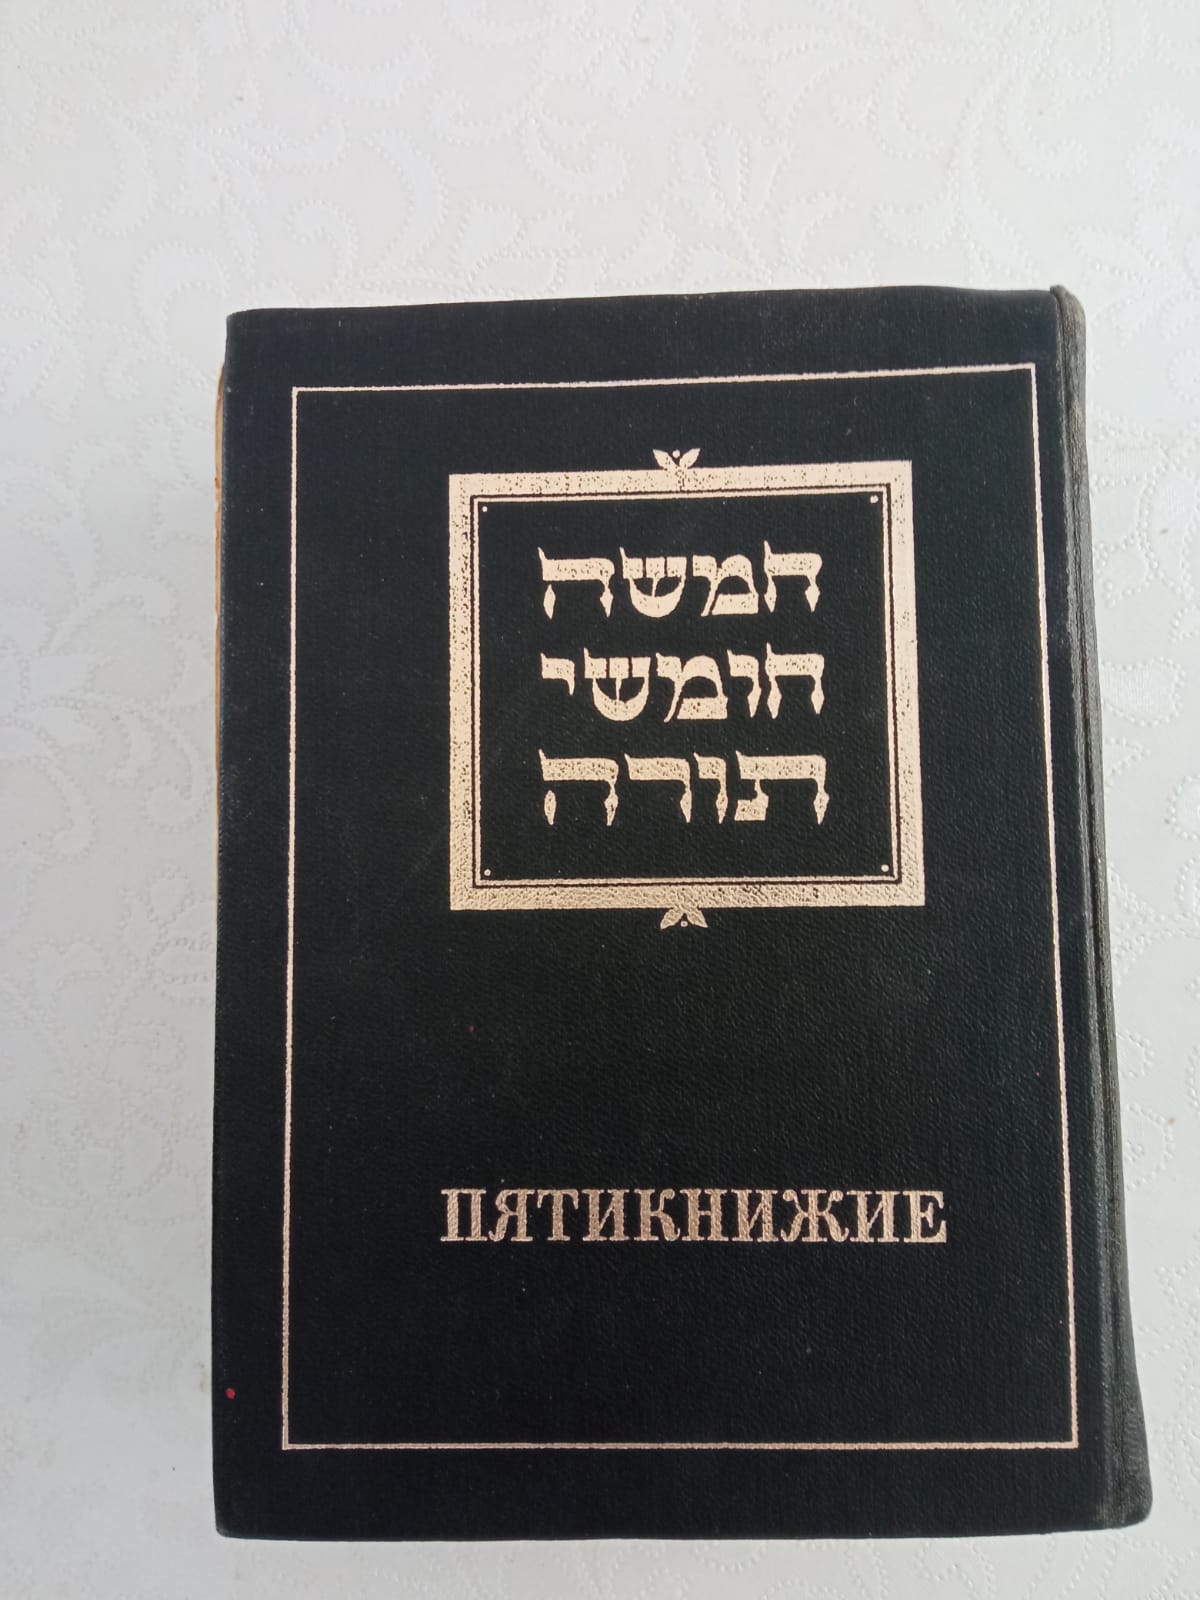 ספר תורה שקיבלה משפחה של הרבנית שניידר ברוסיה הסוביטית 1979 למניינם